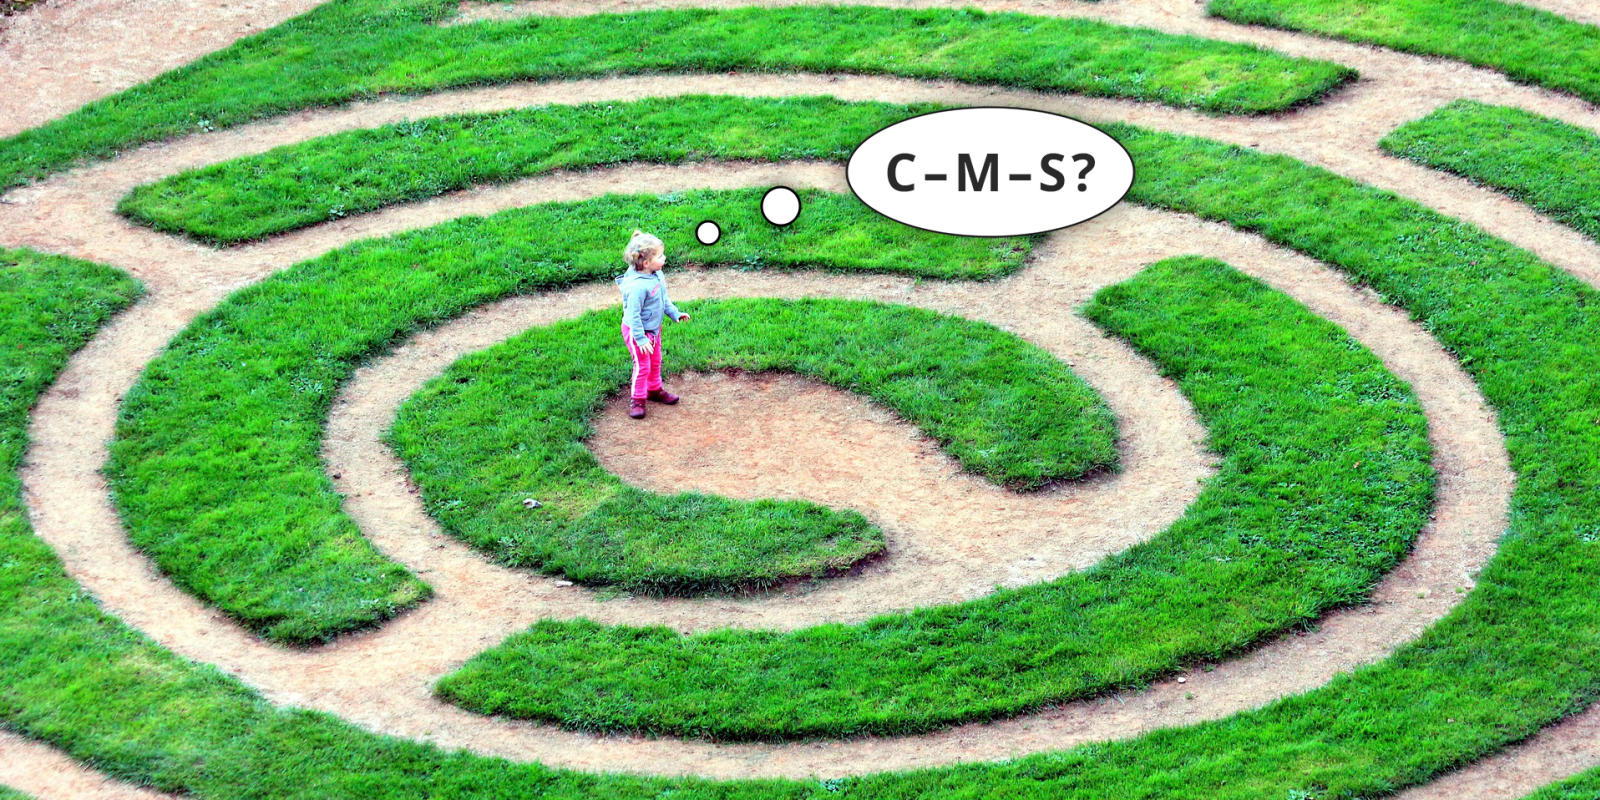 Kreisförmiges Labyrinth aus Rasenstreifen, kleines Mädchen in der Mitte, aus der Vogelperspektive fotografiert, so dass das Mädchen verloren aussieht. Illustration Gedankenblase: 'C-M-S?' 